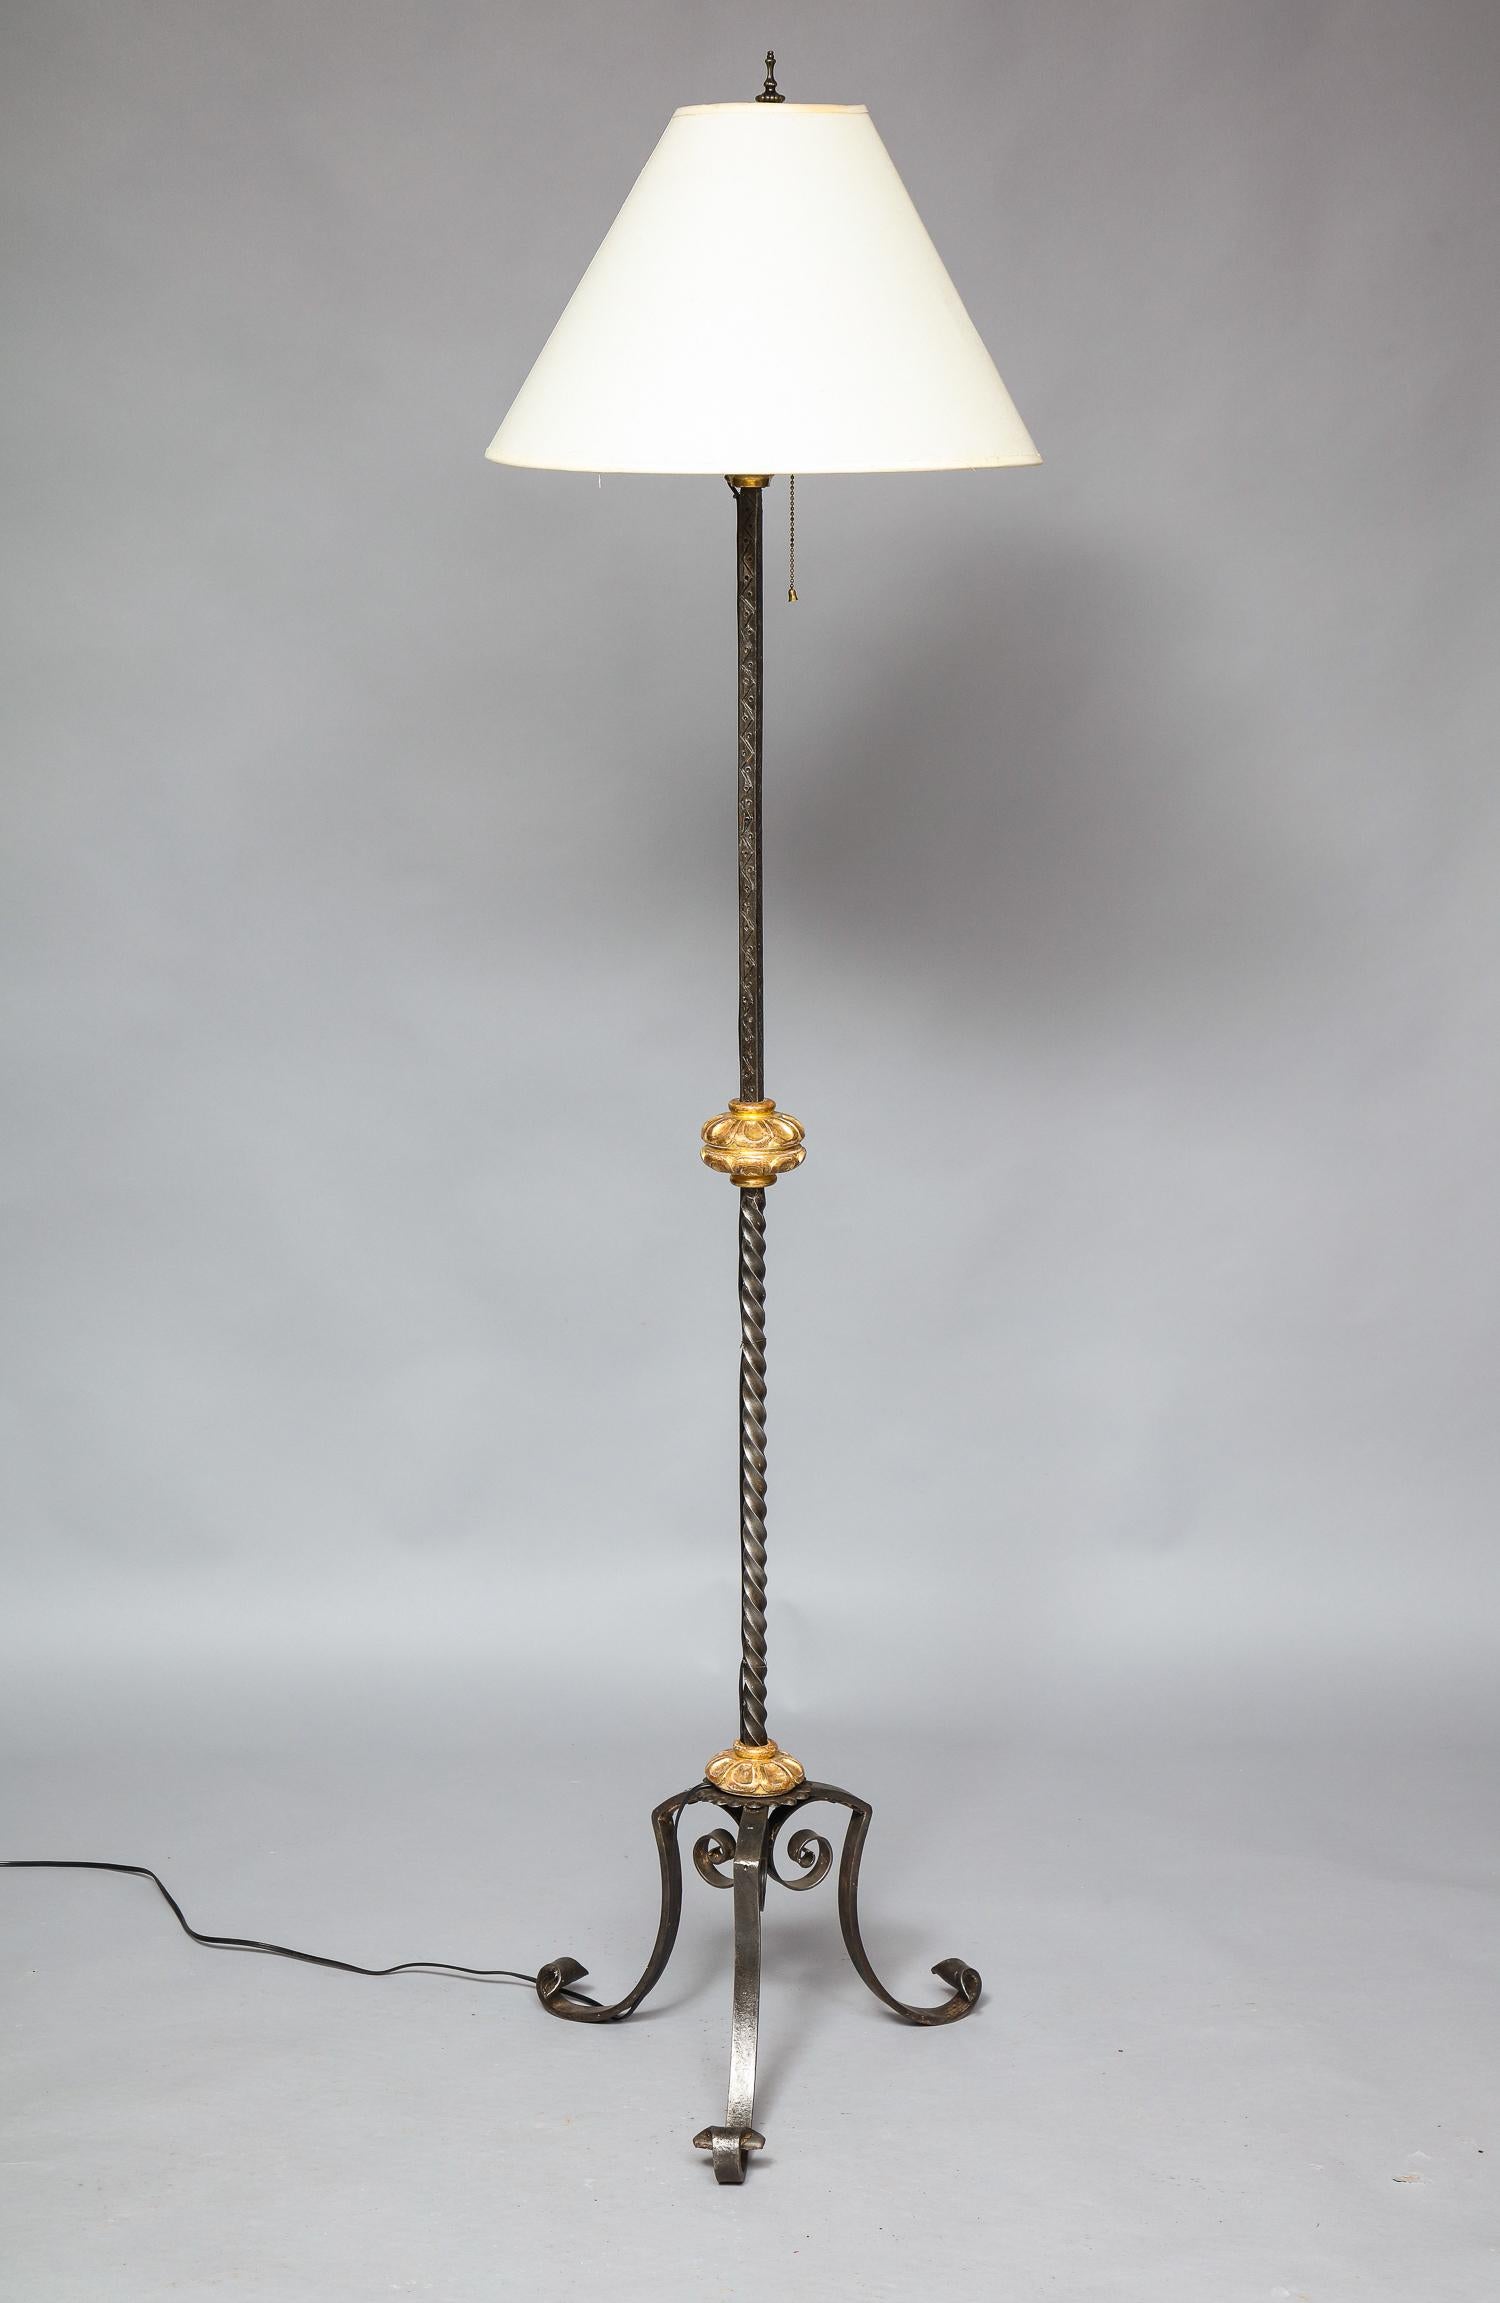 Feine Stehlampe aus Schmiedeeisen im frühen 20. Jahrhundert mit wasservergoldeten und geschnitzten Kragen, der Schaft aus Gerstenkorn mit geätztem Dekor, auf geschwungenen schmiedeeisernen Beinen stehend, das Ganze mit angenehm patinierter